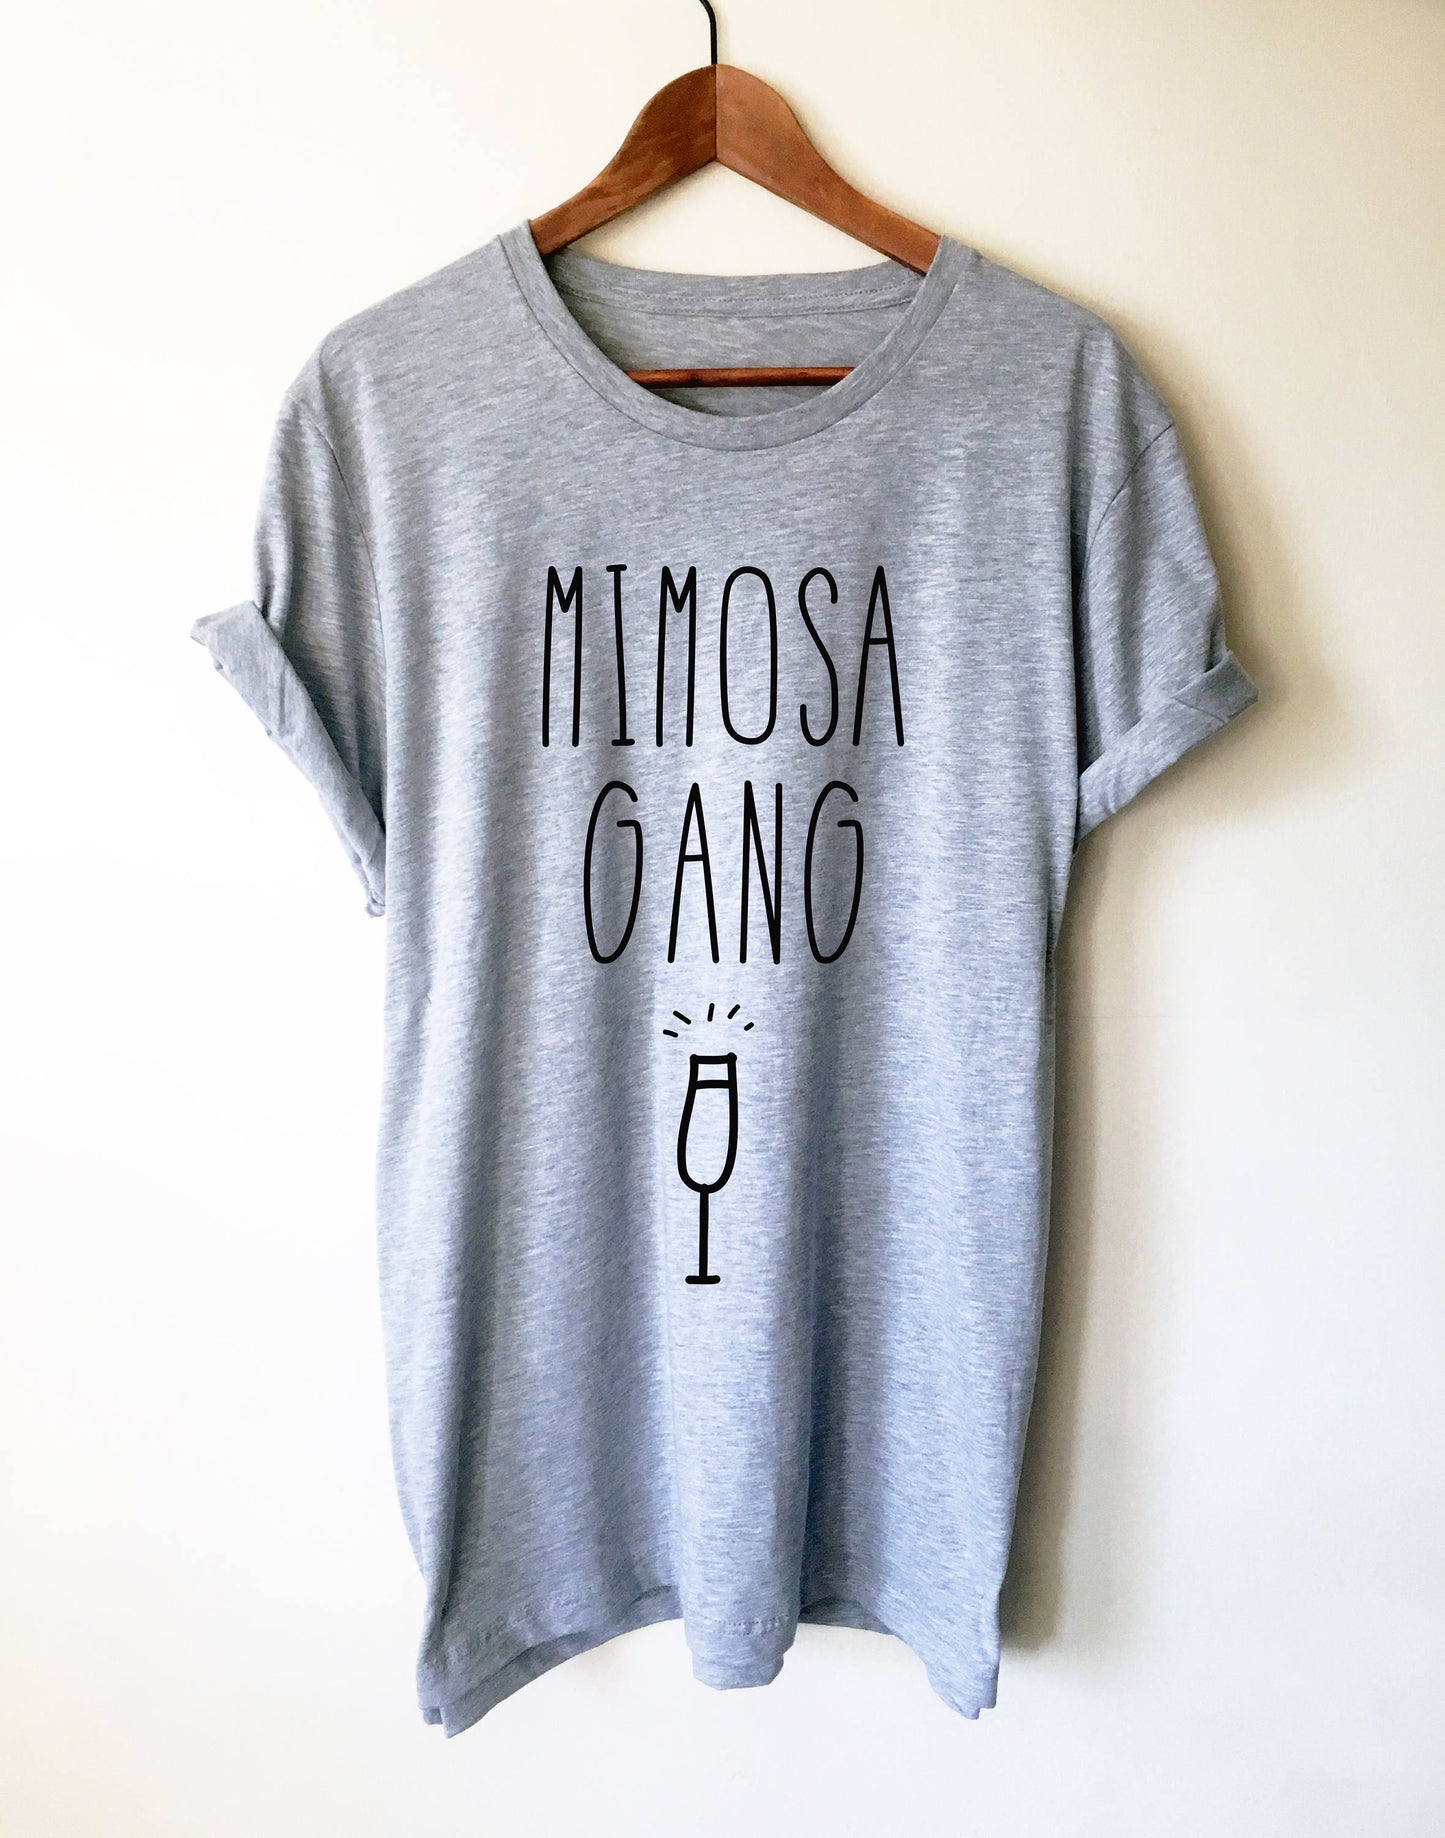 Mimosa Gang Unisex Shirt - Mimosa shirt | Mimosa shirts | Brunch shirt | Sunday brunch shirt | Brunch and bubbly |